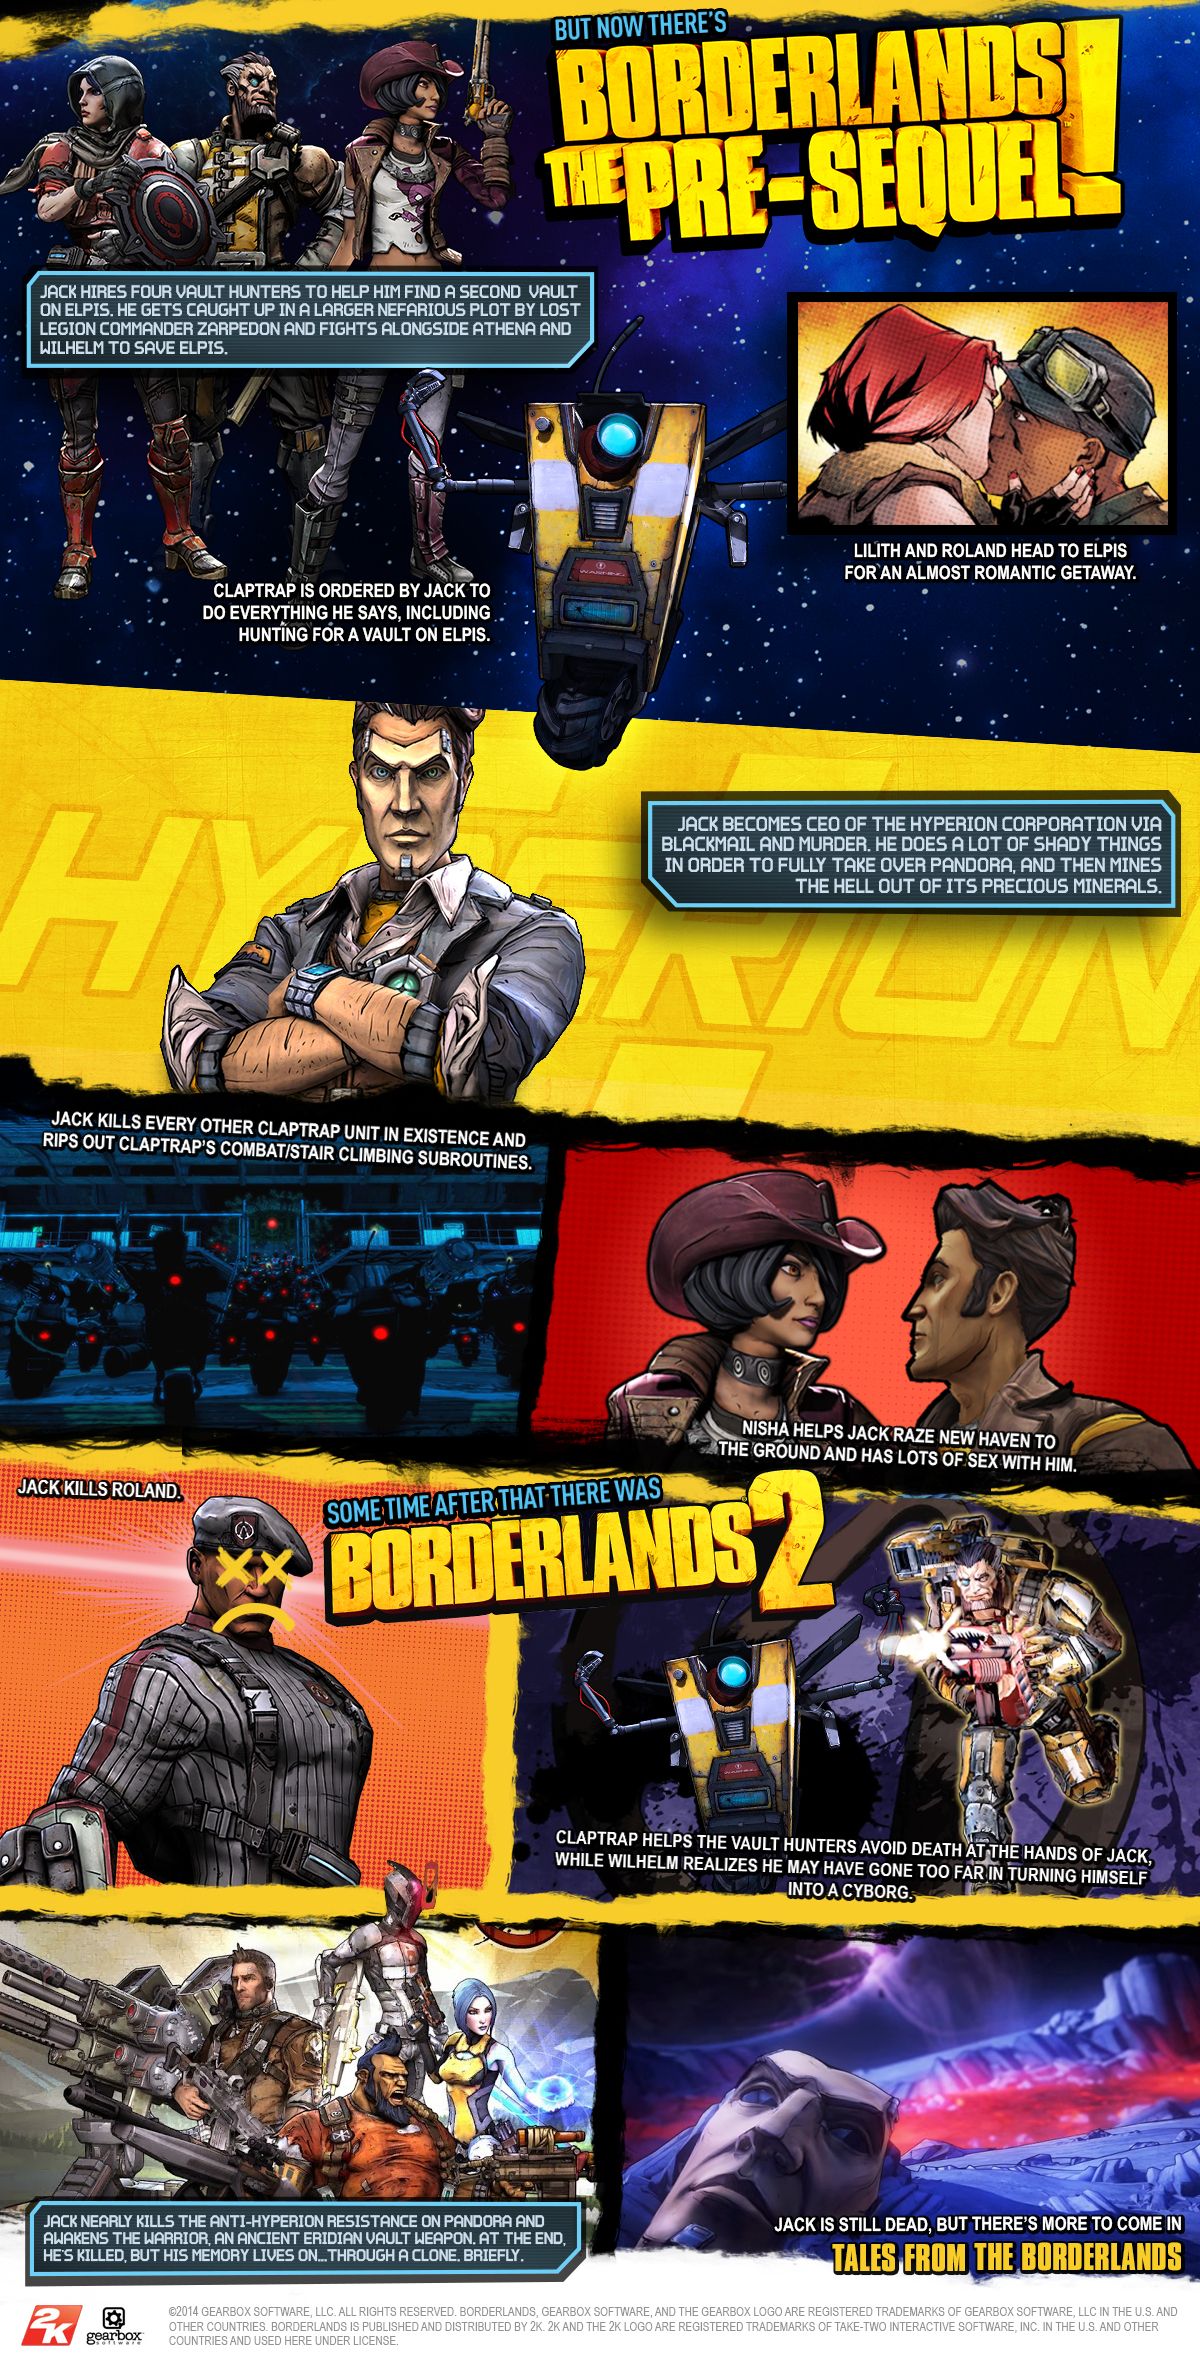 ネタバレ注意 Borderlands シリーズ3作品の主な流れをまとめた公式タイムラインが発表 Doope 国内外のゲーム情報サイト